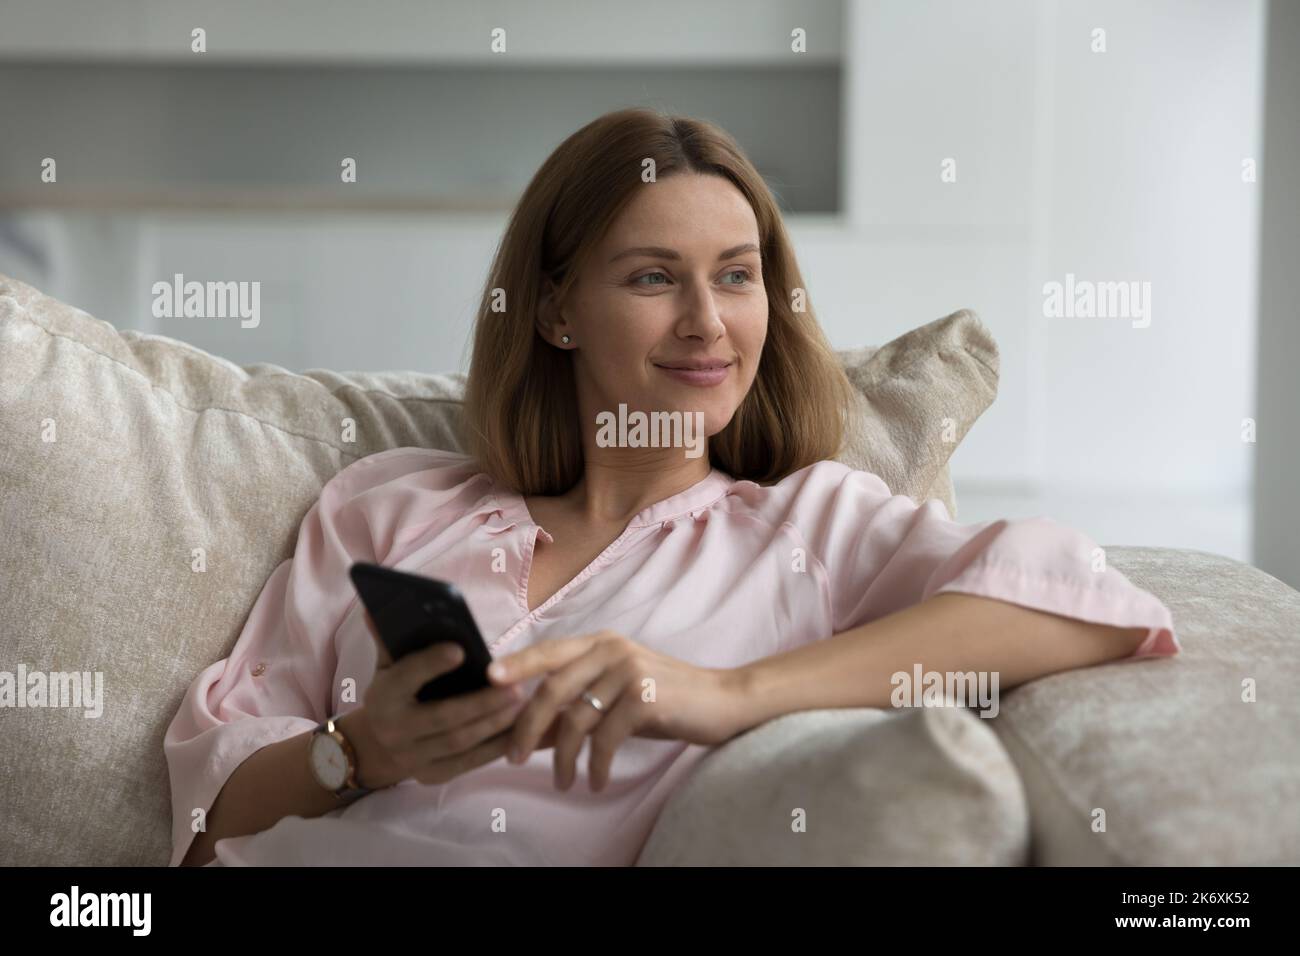 Une femme regarde de côté s'assoit sur un canapé avec un smartphone entre les mains Banque D'Images